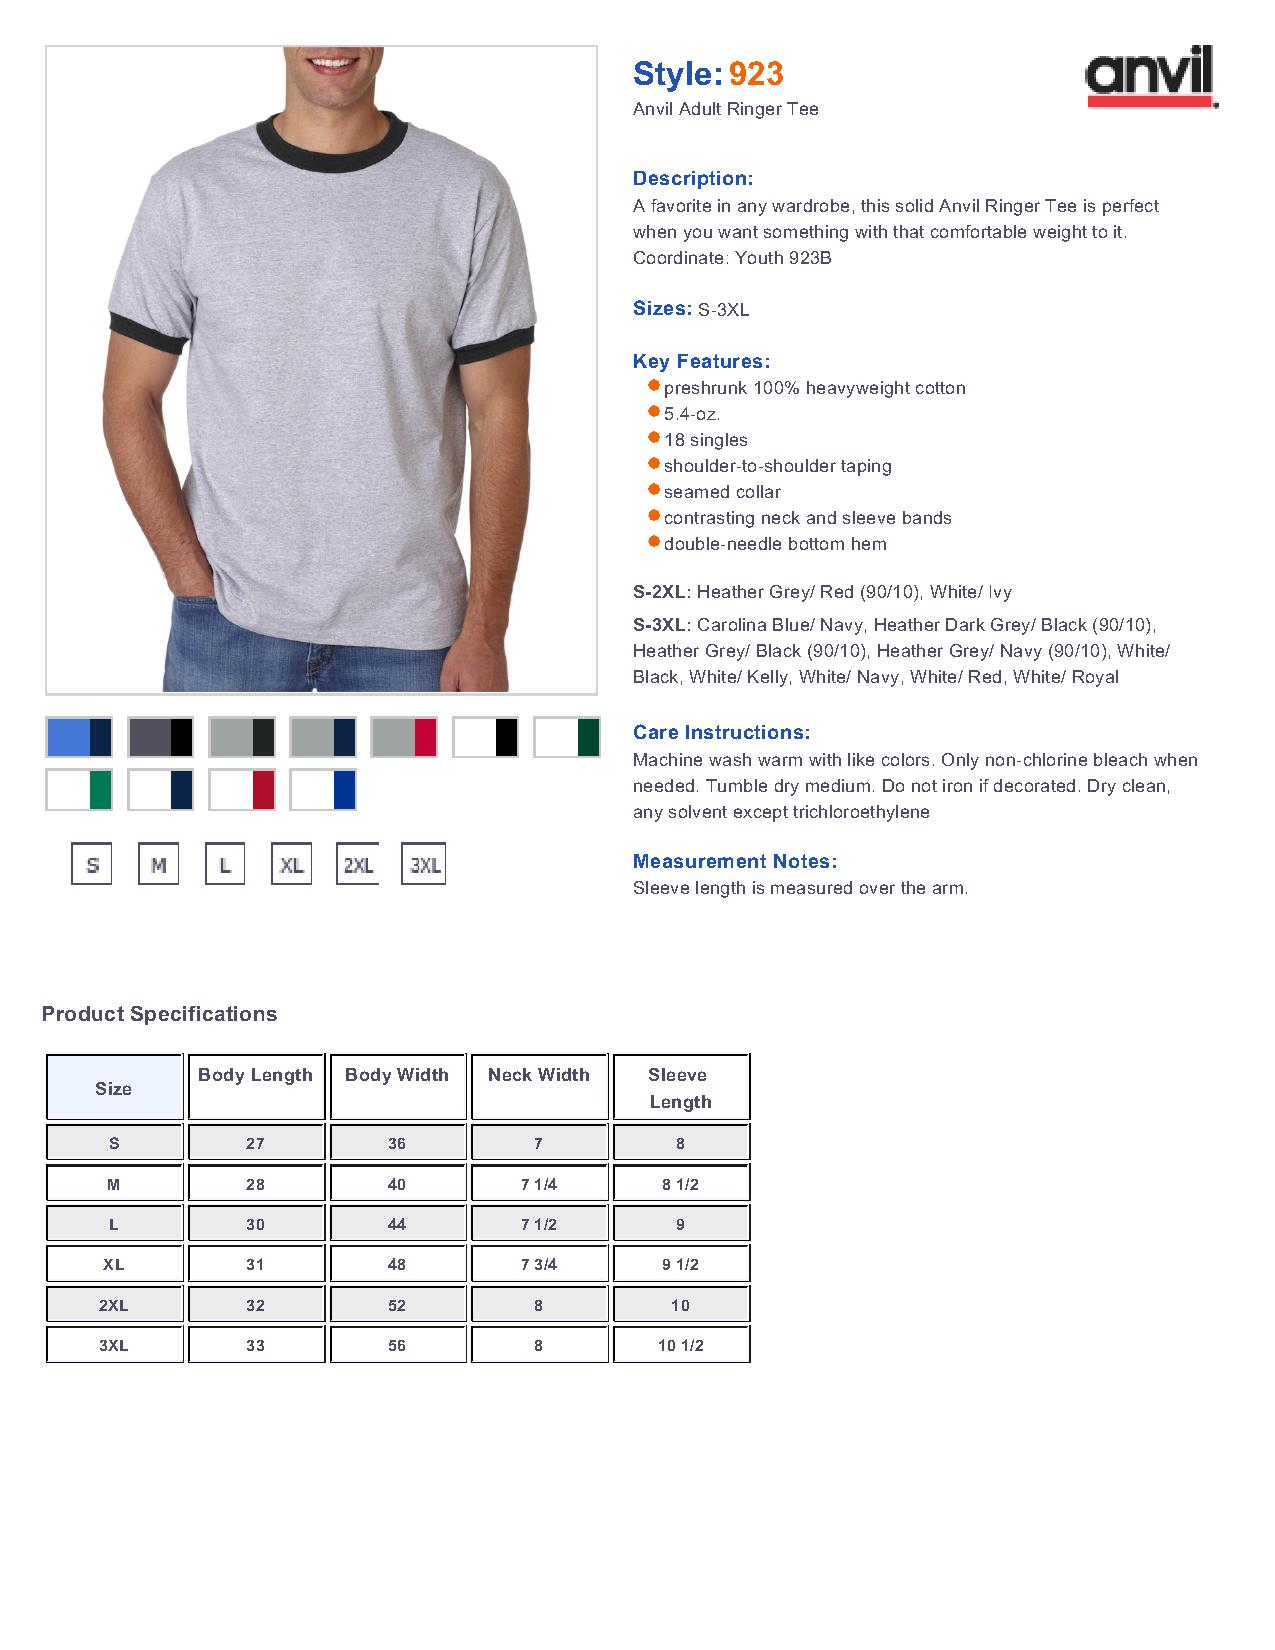 Anvil 923 6.1 oz. Ringer T-Shirt $6.94